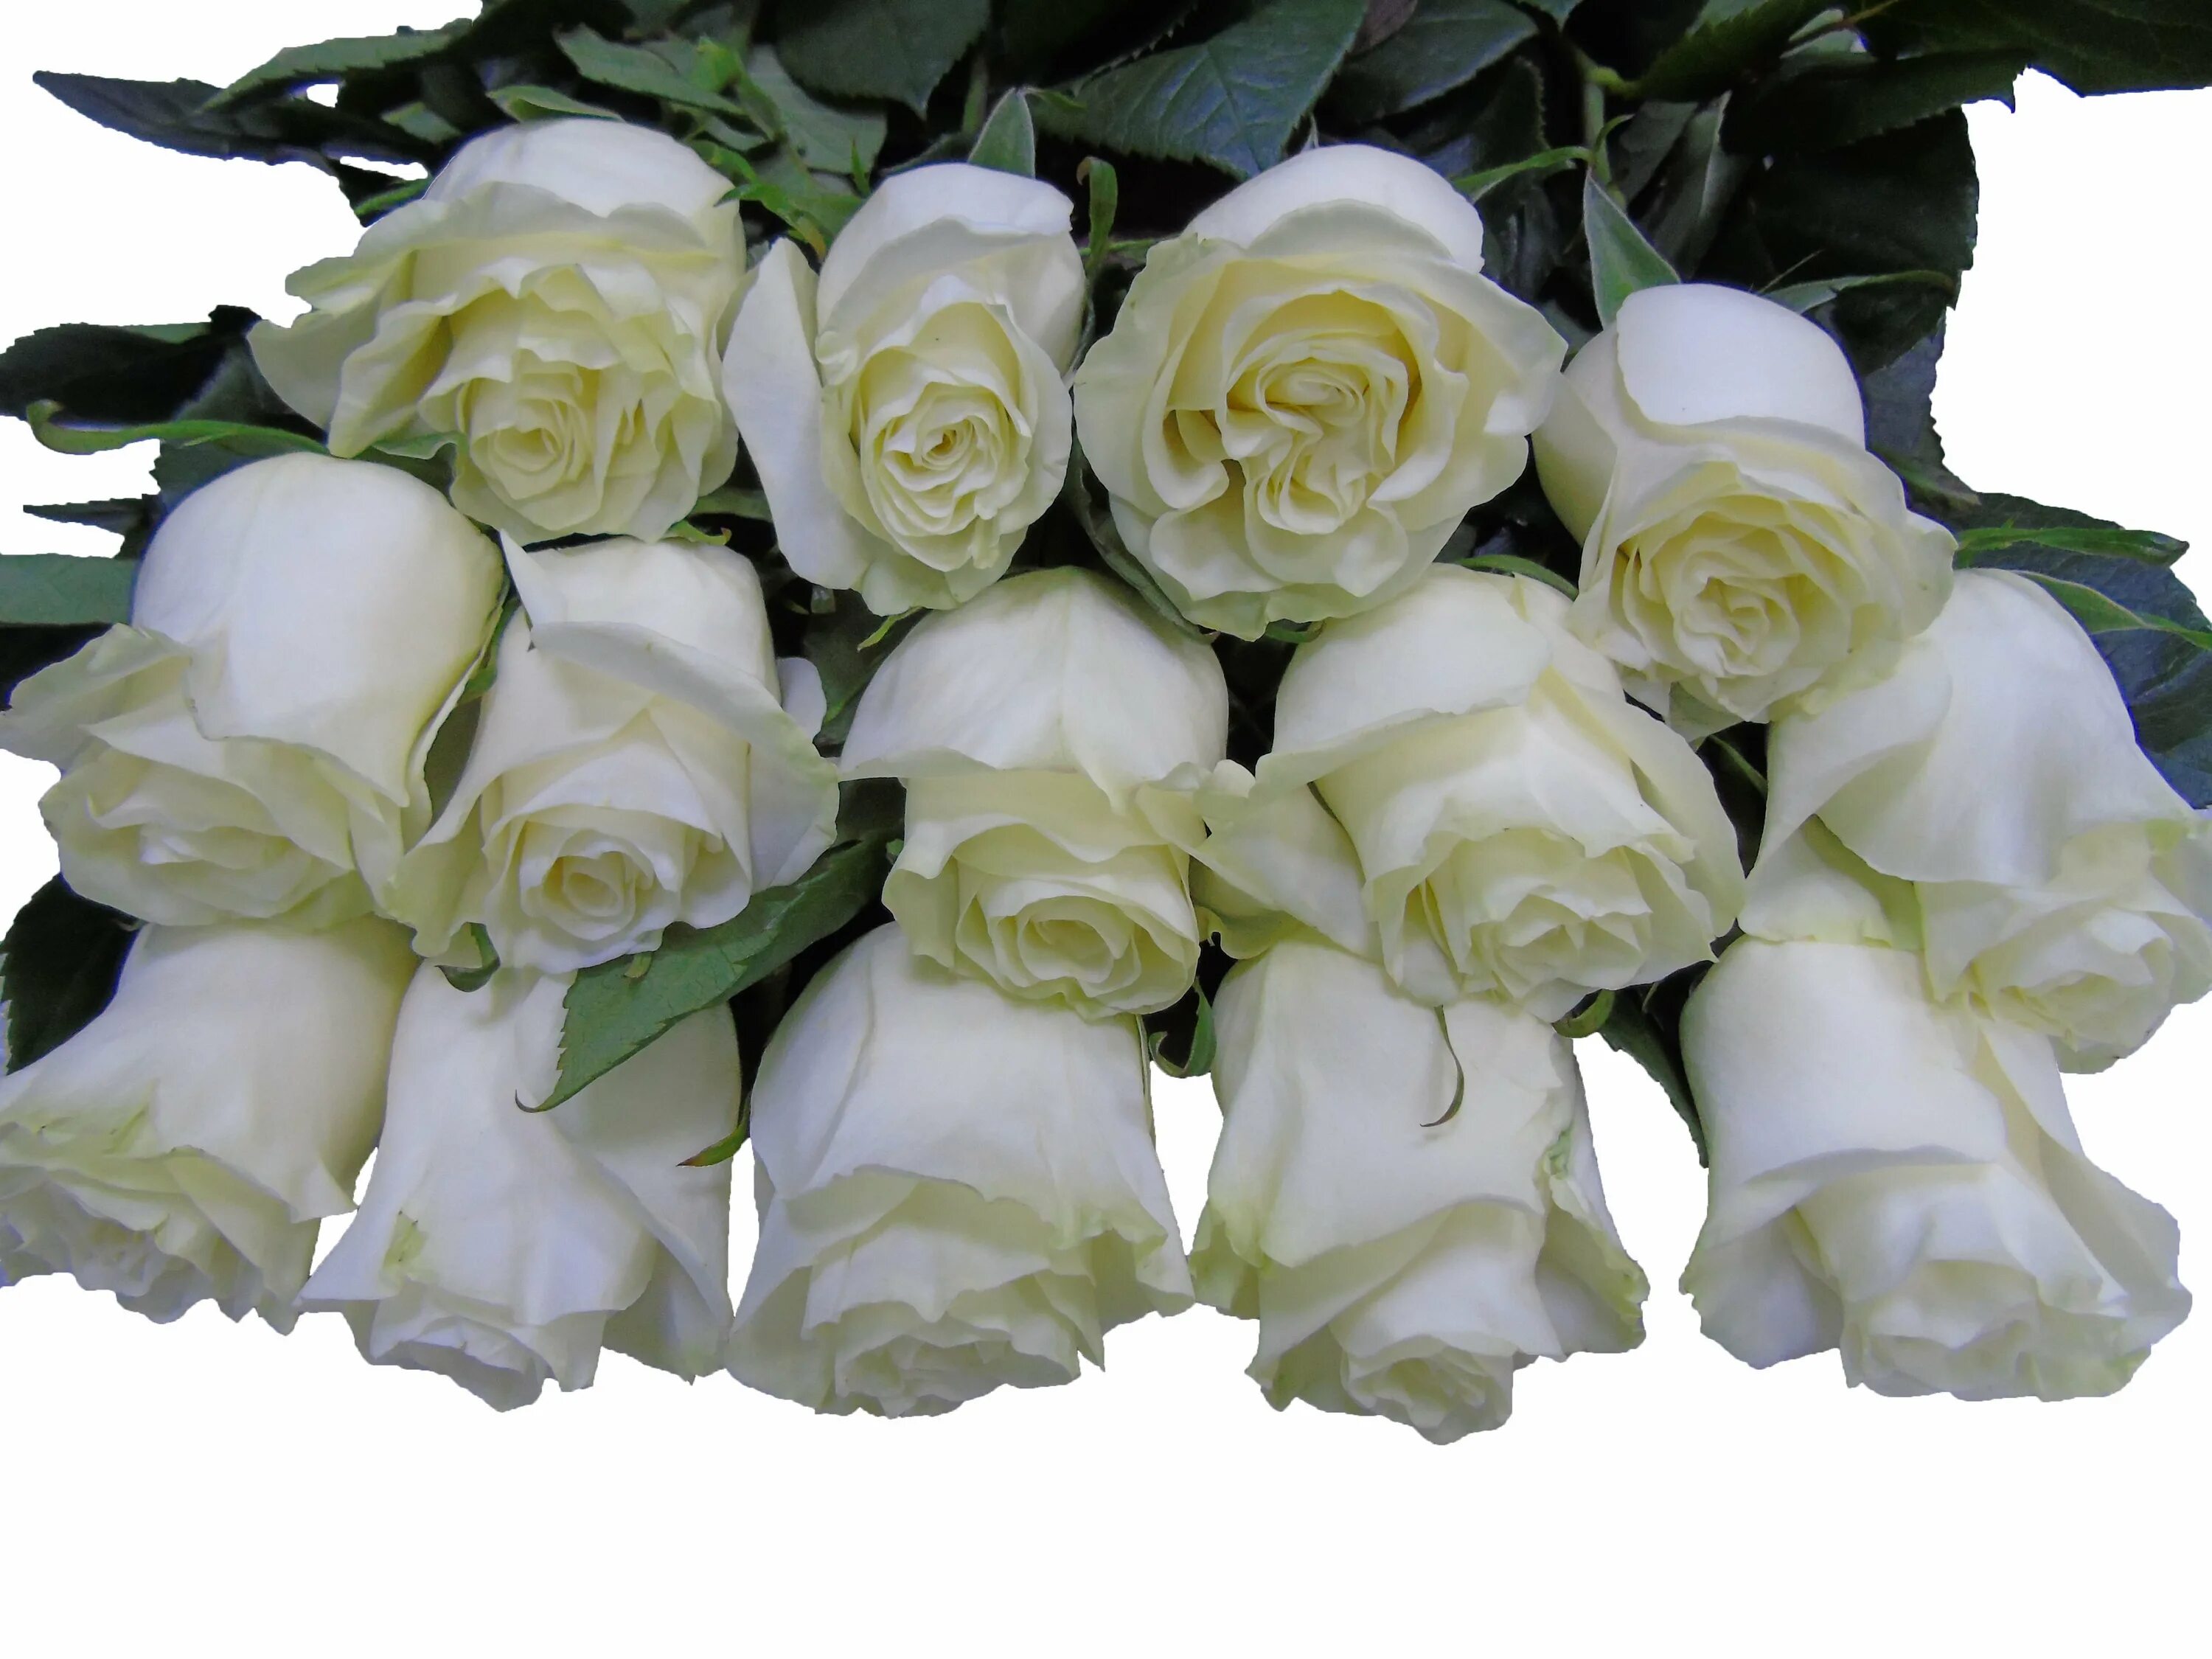 Розы белые низкие. Сорт роз Мондиаль.